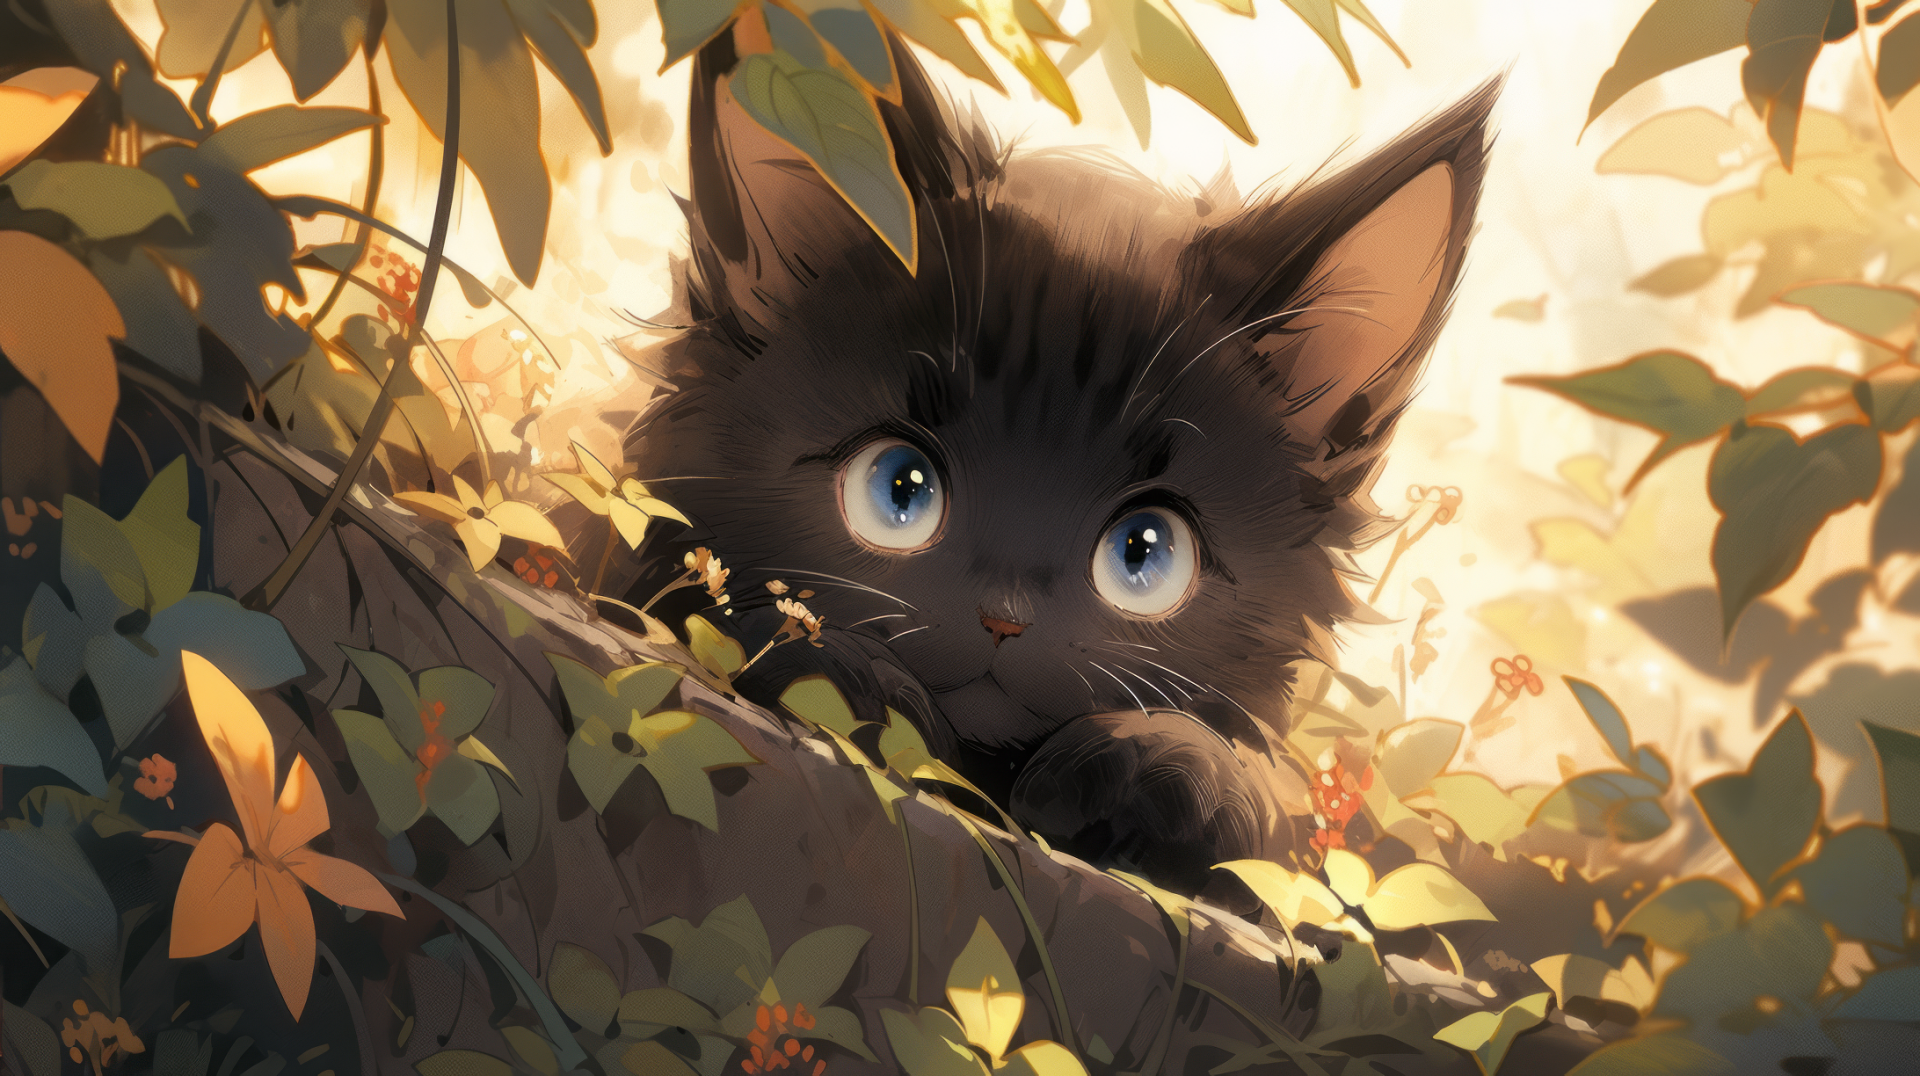 Cute Cat Wallpaper HD image 4K Download